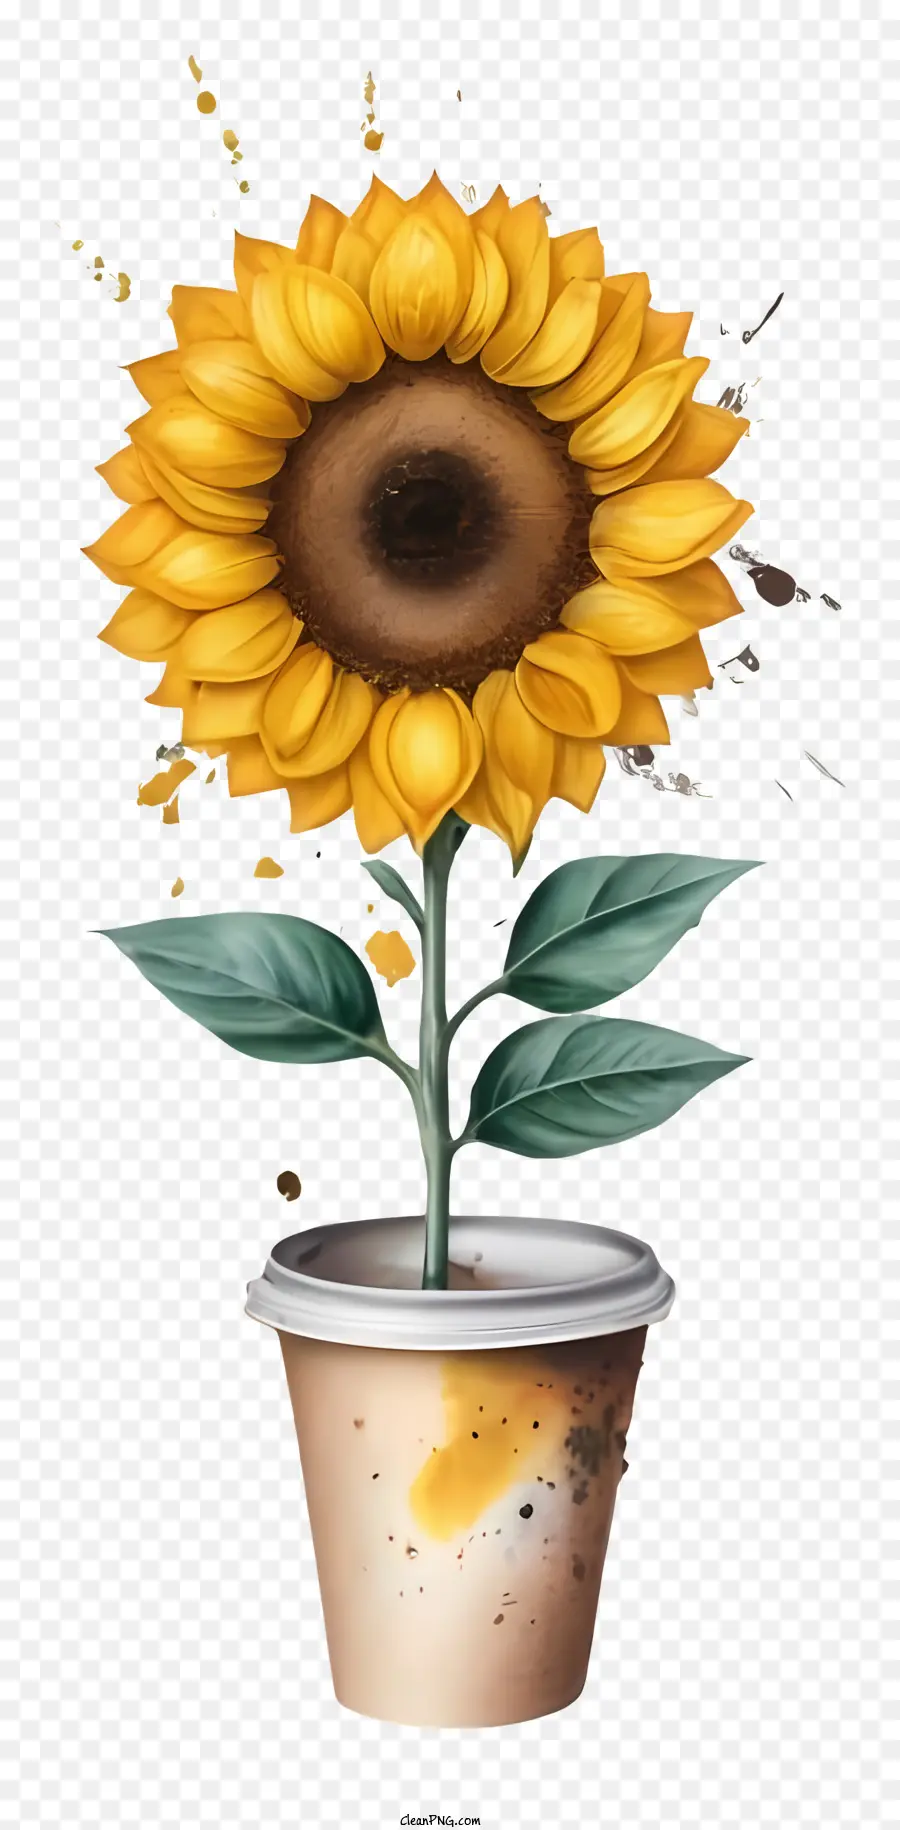 Sonnenblumenpflanze Plastikbecher Brauner Tasse Flecken auf Tasse - Realistisches Bild der Sonnenblumenpflanze in Tasse